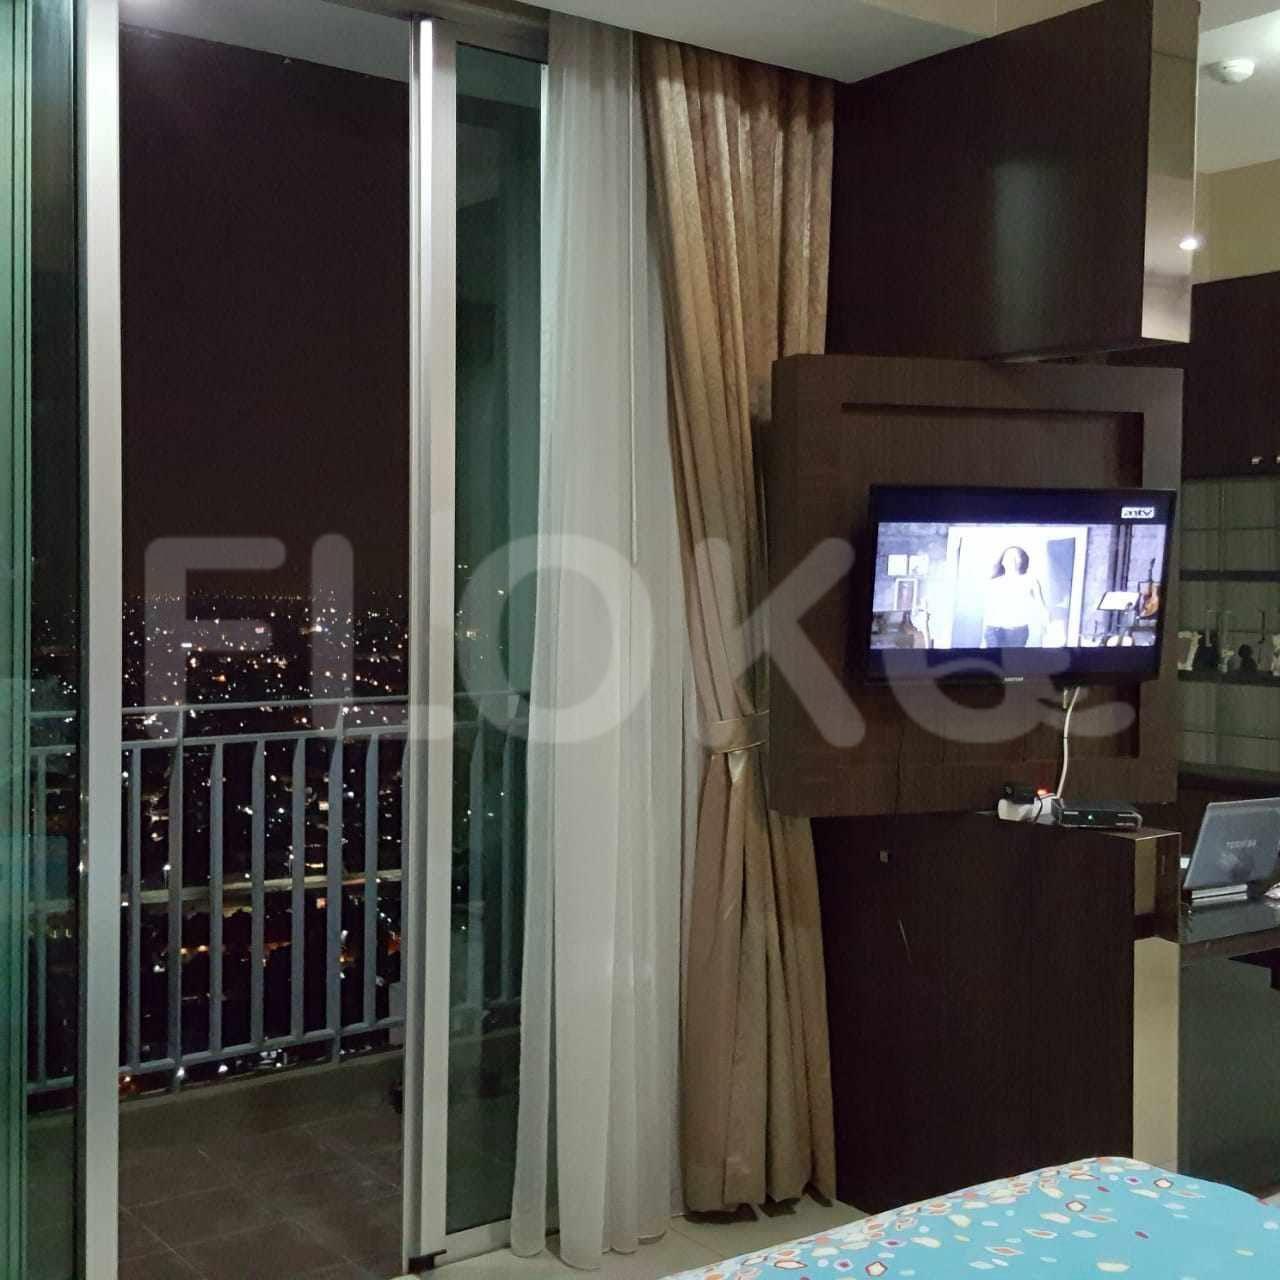 Sewa Apartemen Kemang Village Residence Tipe 3 Kamar Tidur di Lantai 15 fkeb8d